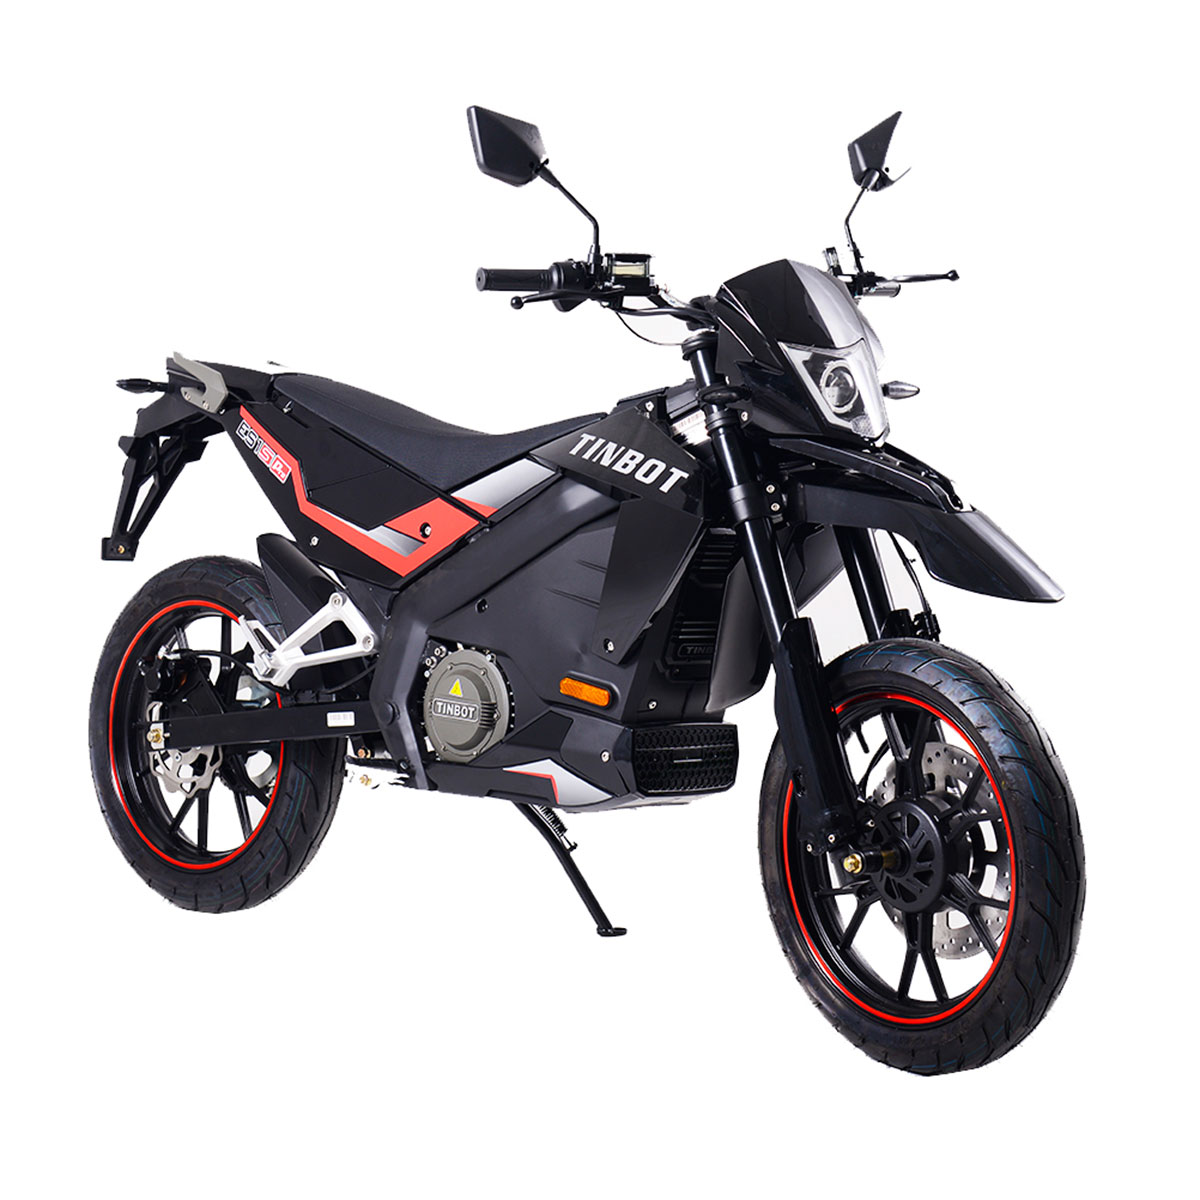 La marca de motos eléctricas Tinbot ya está disponible en España